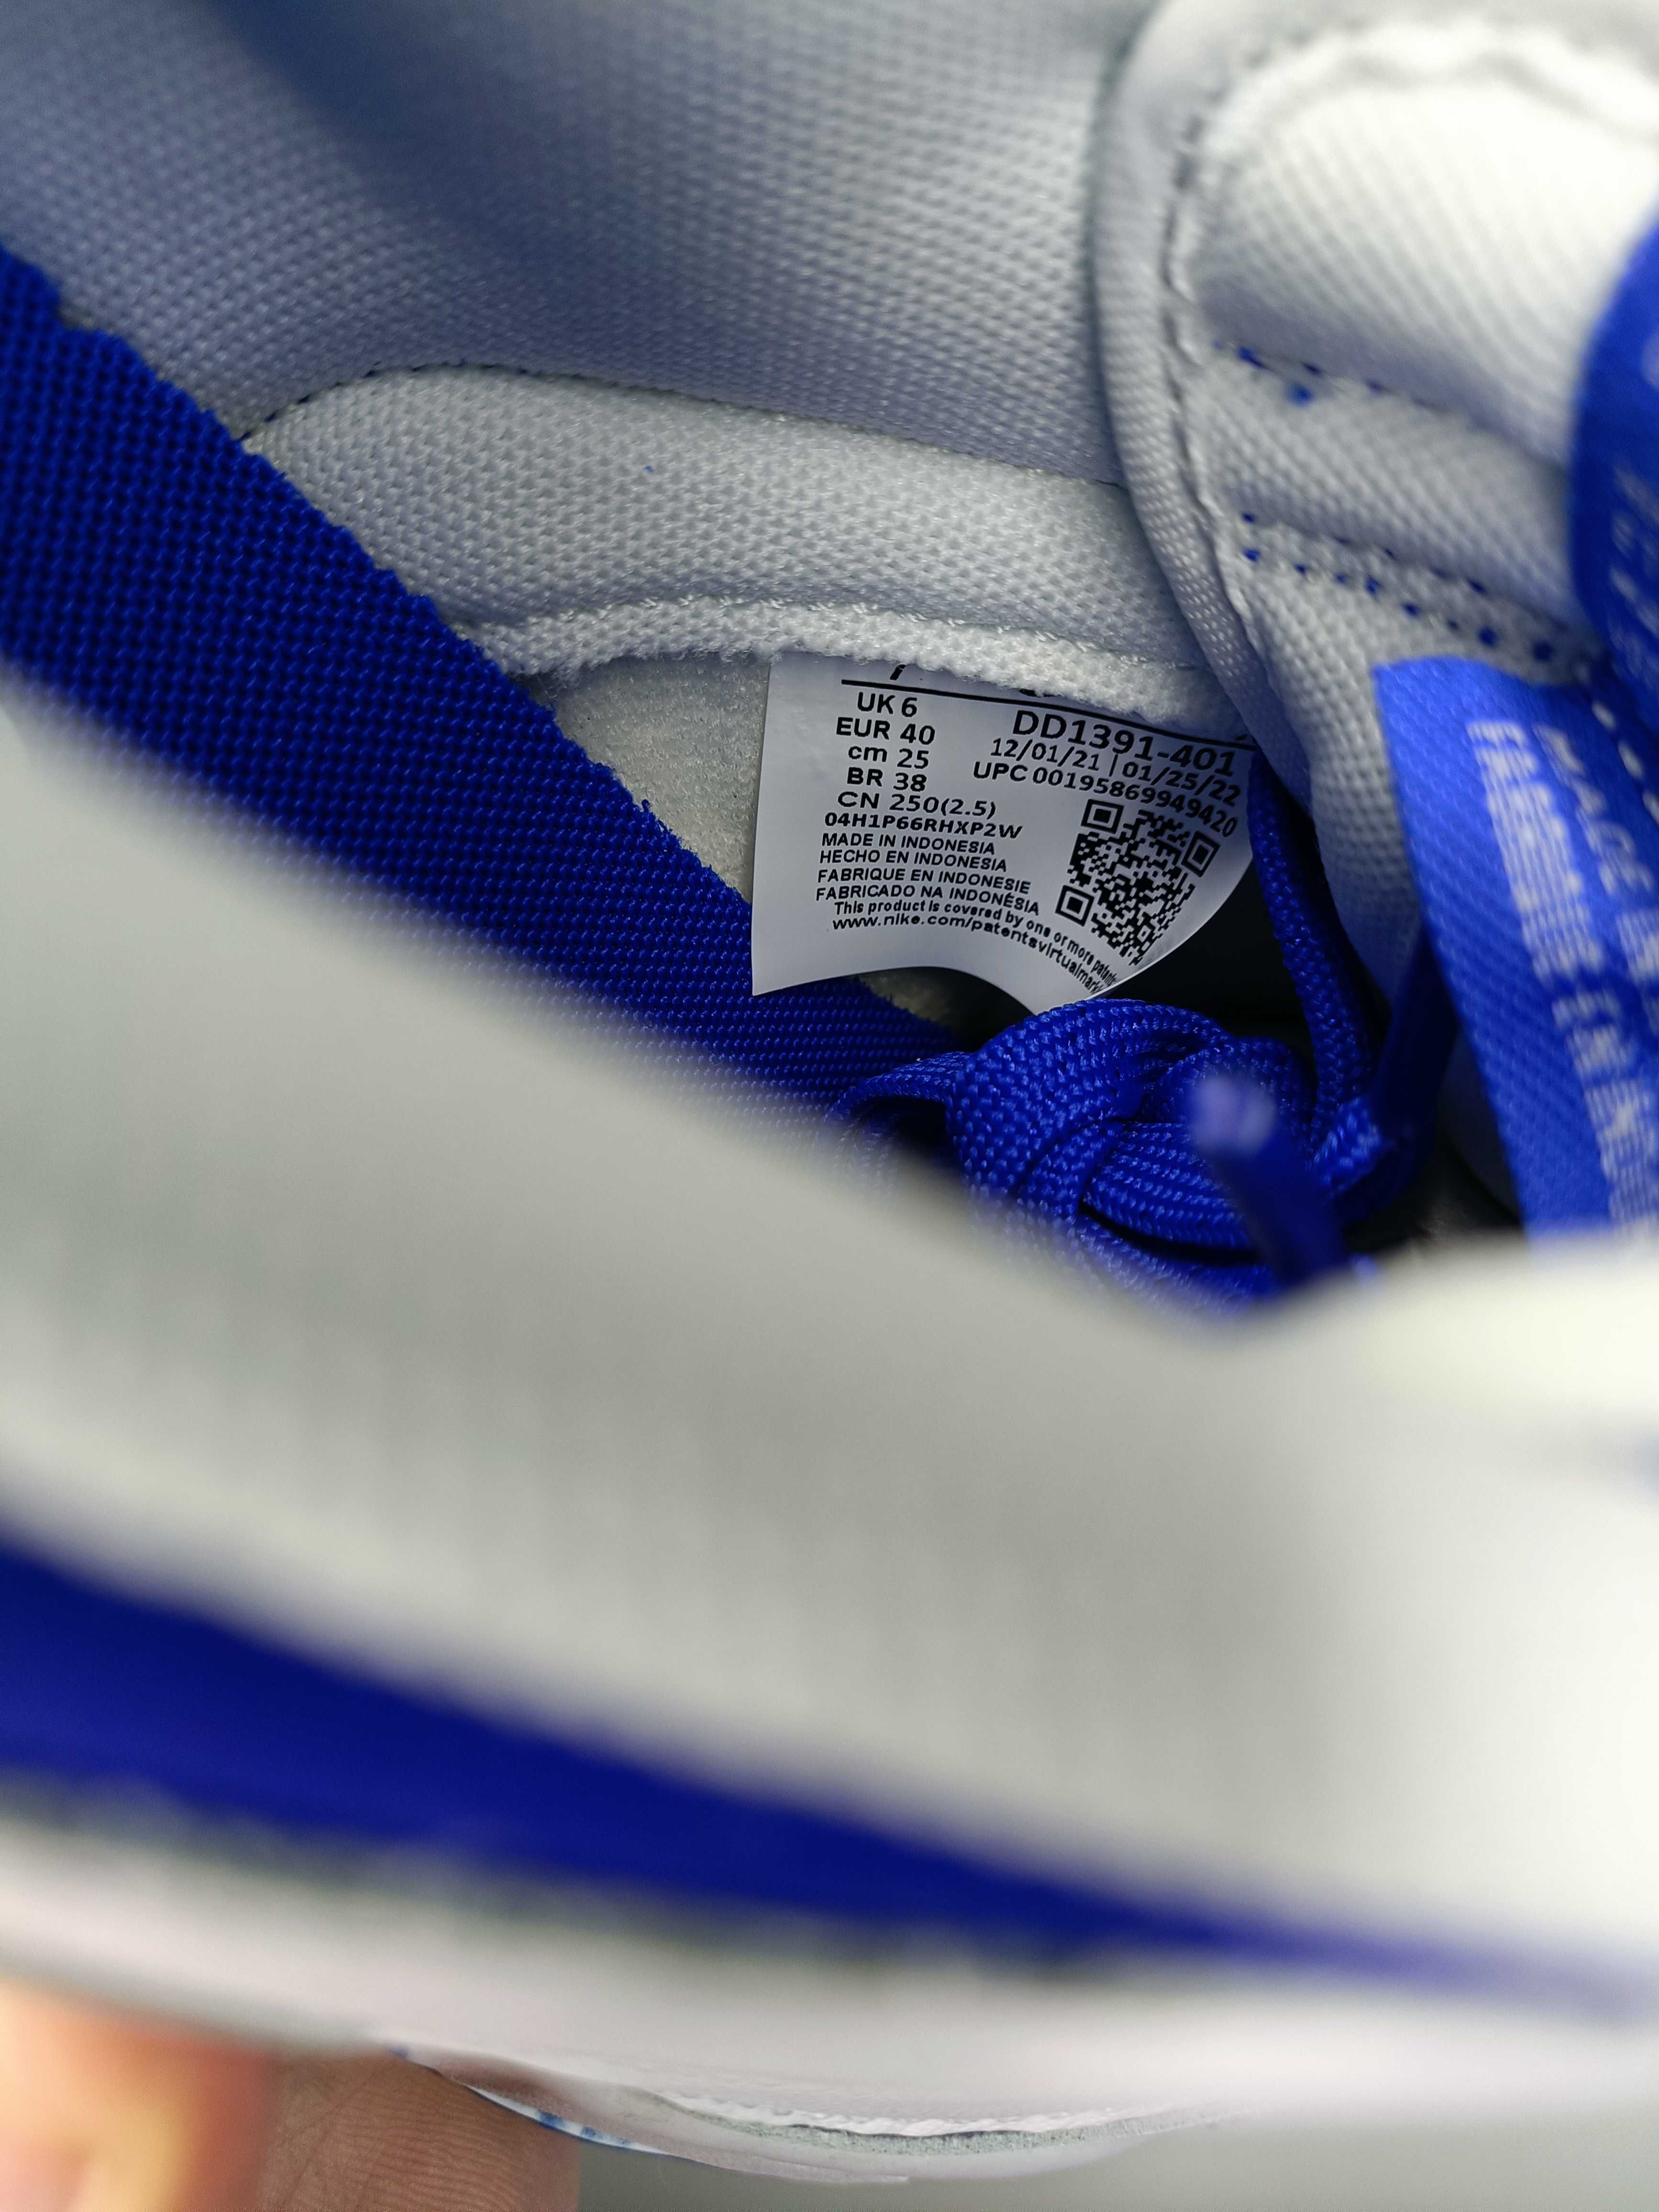 Buty Nike Dunk Low Racer Blue White rozmiar 40 wkładka 25 cm